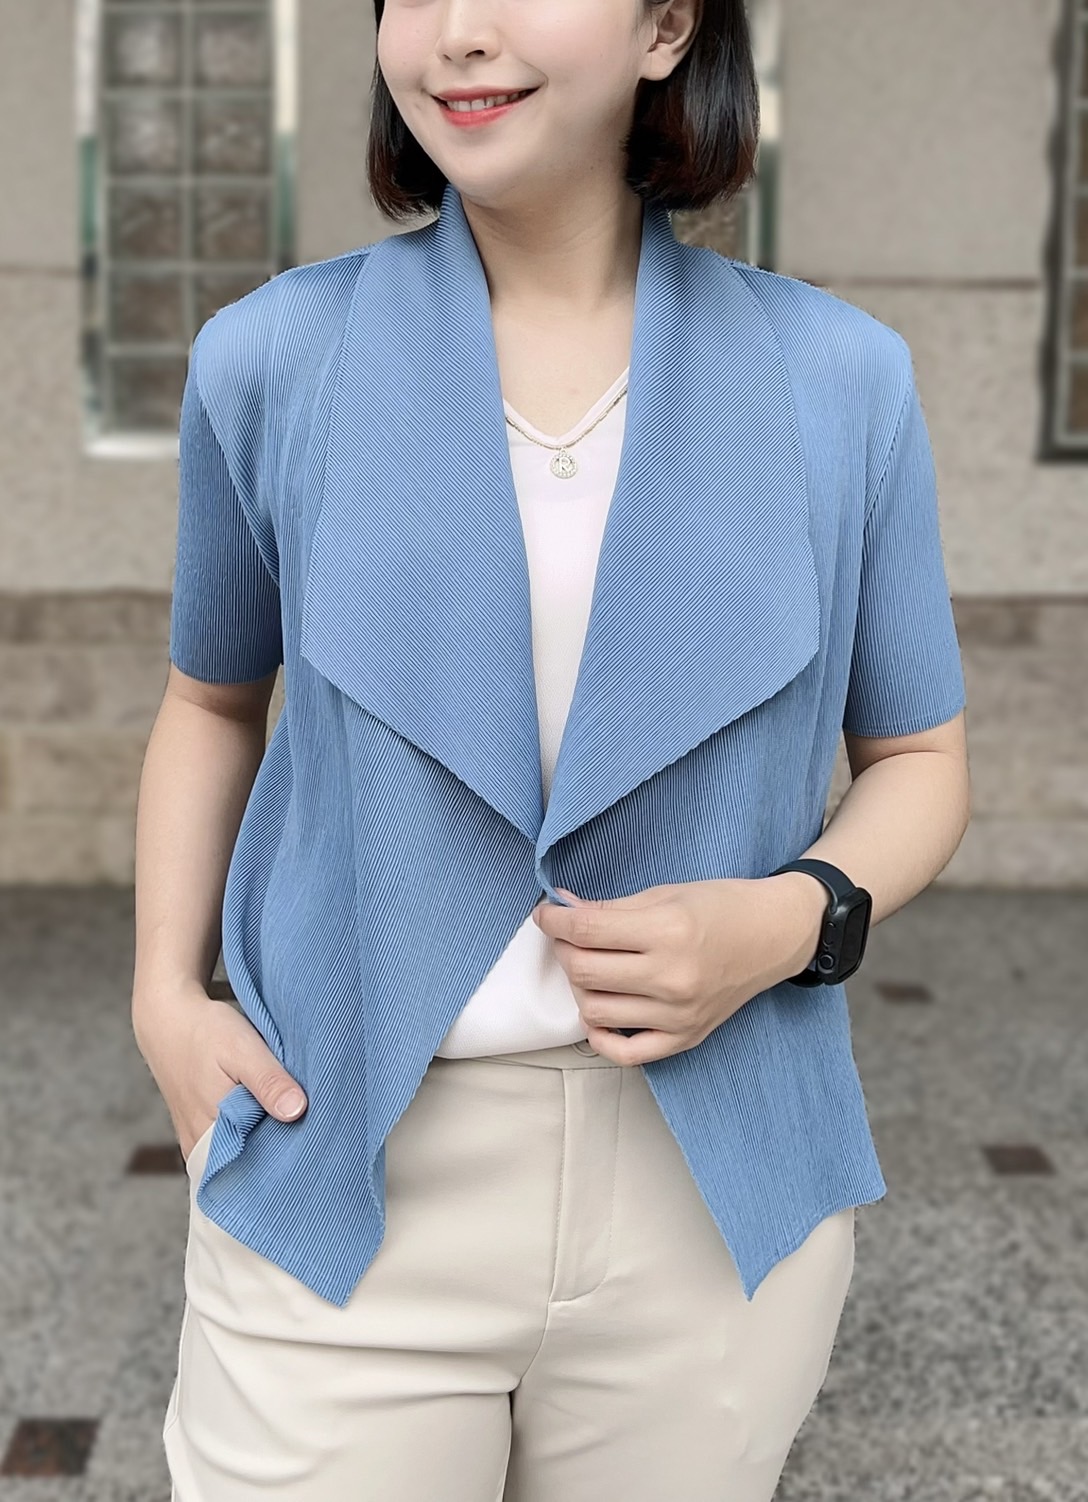 韓國修身壓摺百搭罩衫外套 (3)